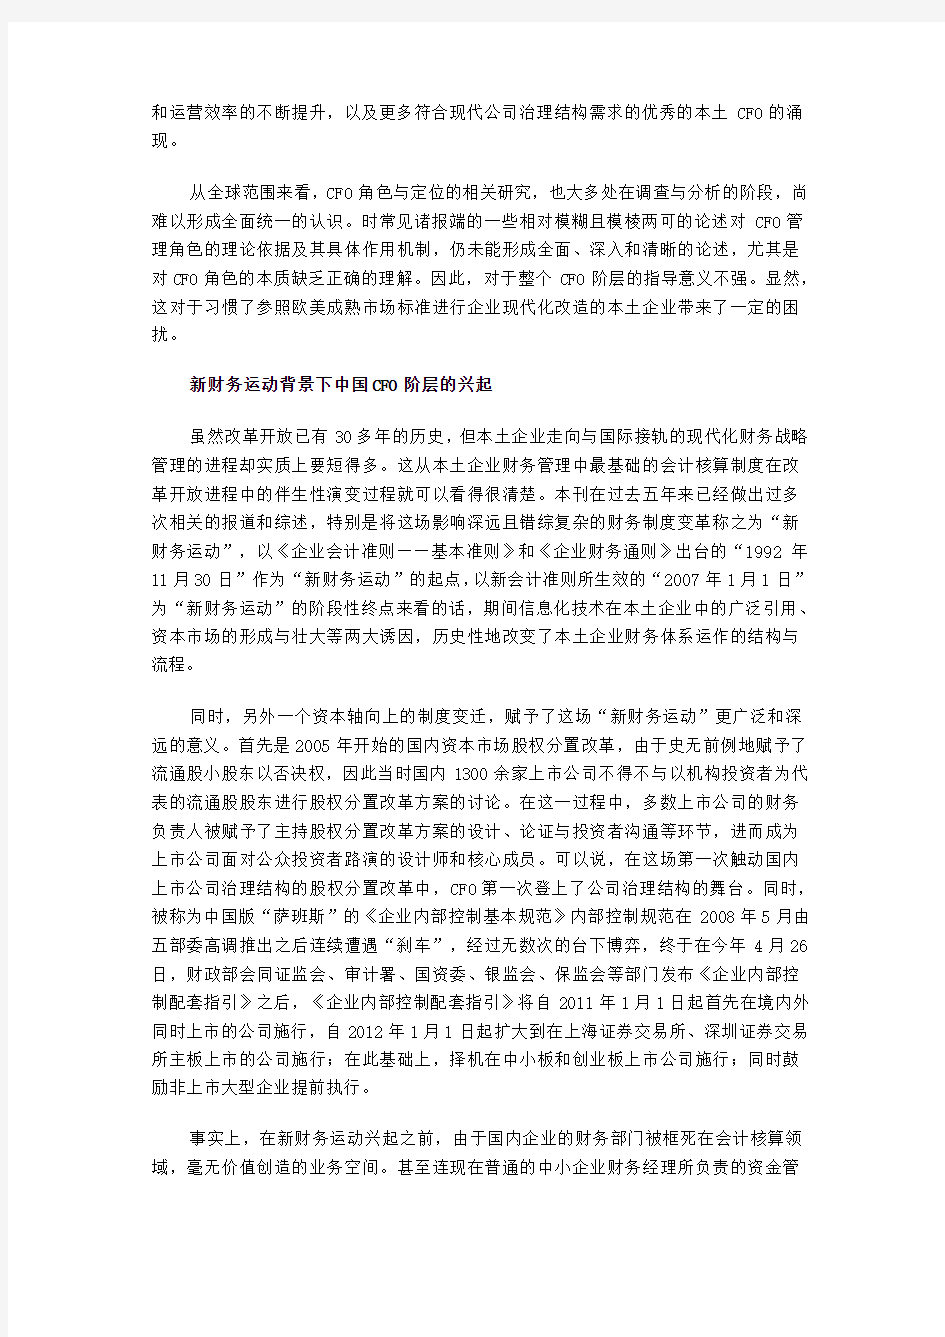 2010年中国CFO生存状况调查